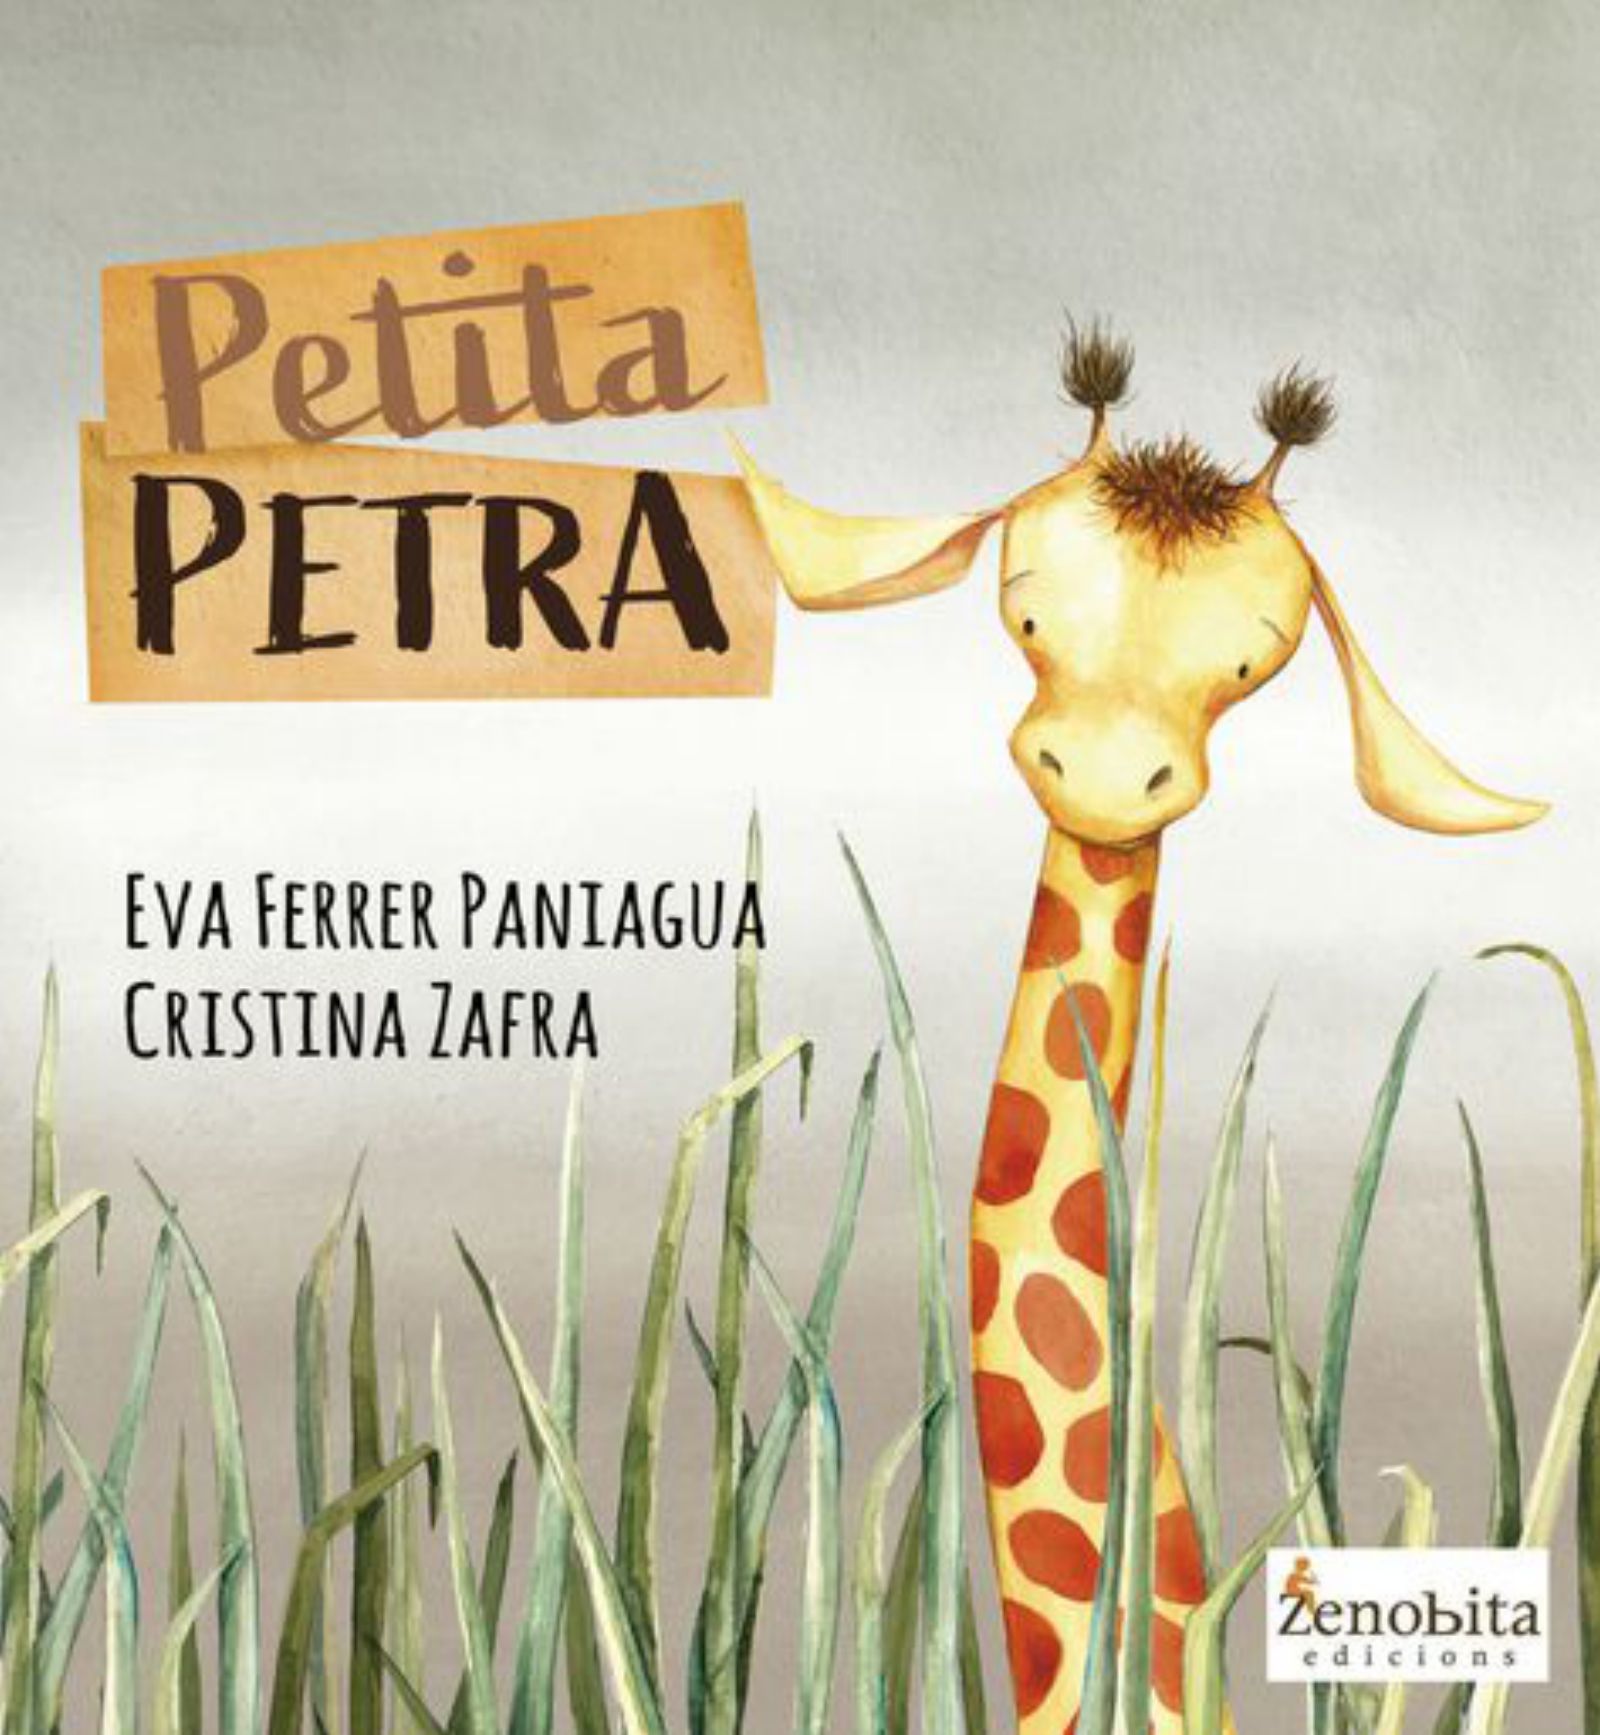 Zenobita reedita «Les ínyigues» i presenta avui i demà «Petita Petra»